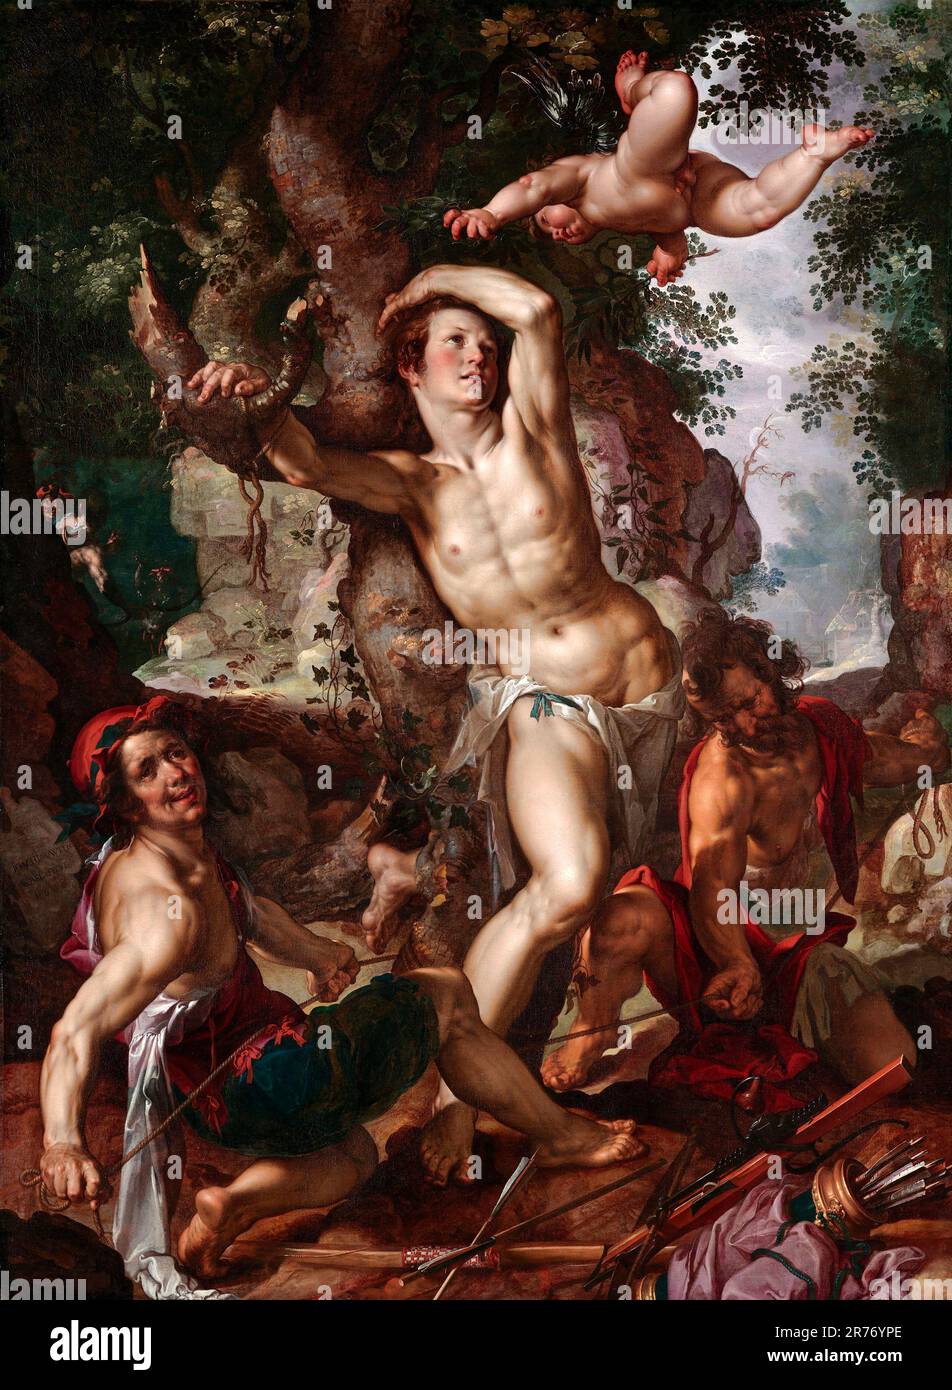 Joachim Wtewael. Le martyre de Saint Sébastien par Joachim Anthoniszoon Wtewael (1566-1638), huile sur toile, 1600 Banque D'Images